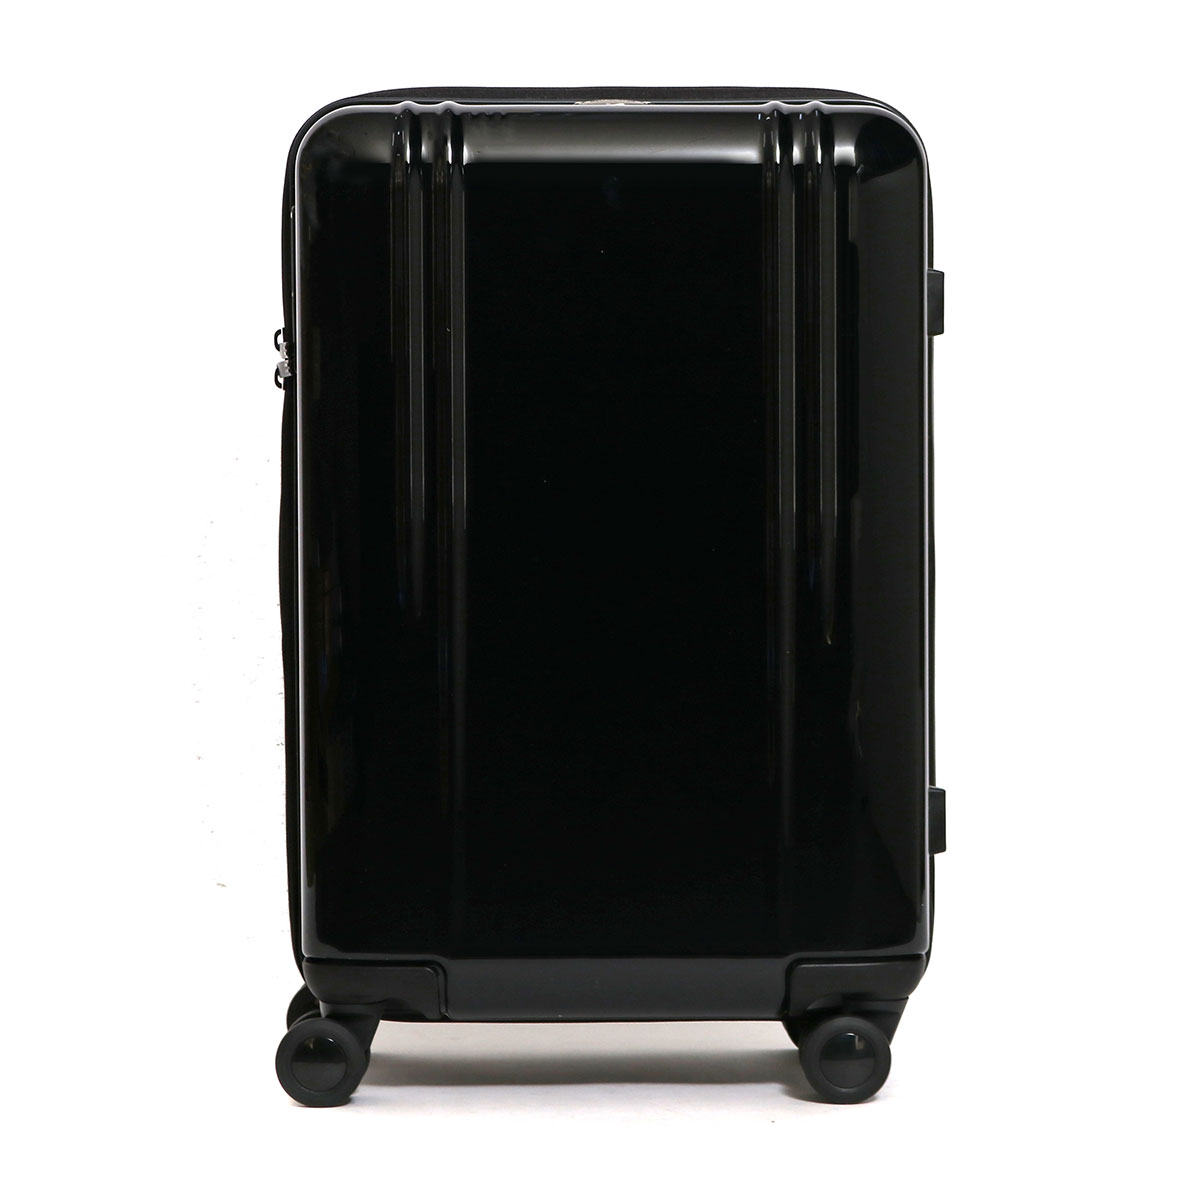 ゼロハリバートン スーツケース - スーツケース・キャリーケースの人気 